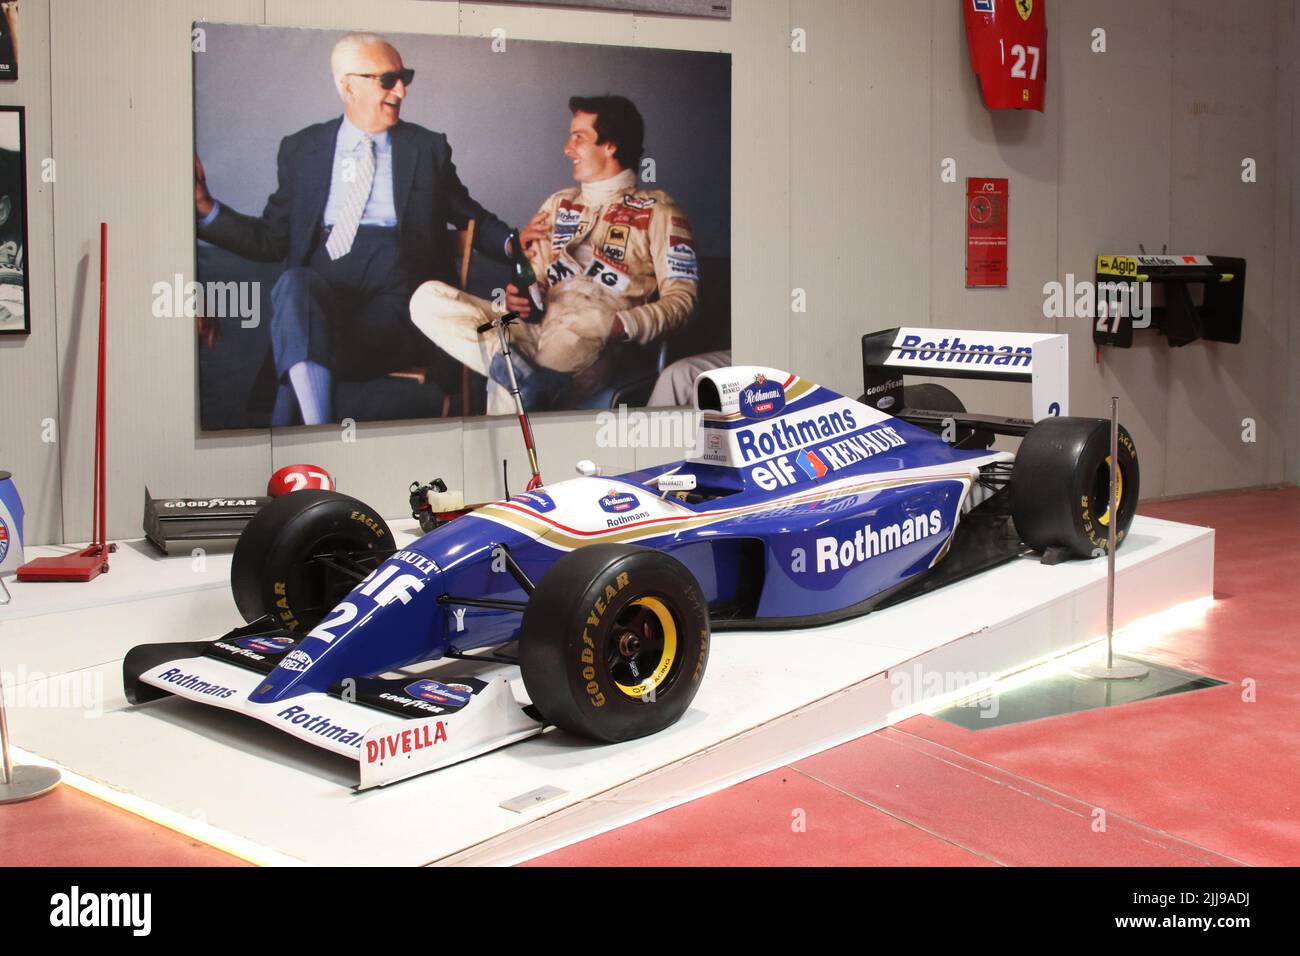 Nonantola (Módena) Italia, 2022 de julio - Williams Renault FW19 del piloto Jacques Villeneuve, campeón del mundo F1 1997, delante de una foto con Gilles Vil Foto de stock